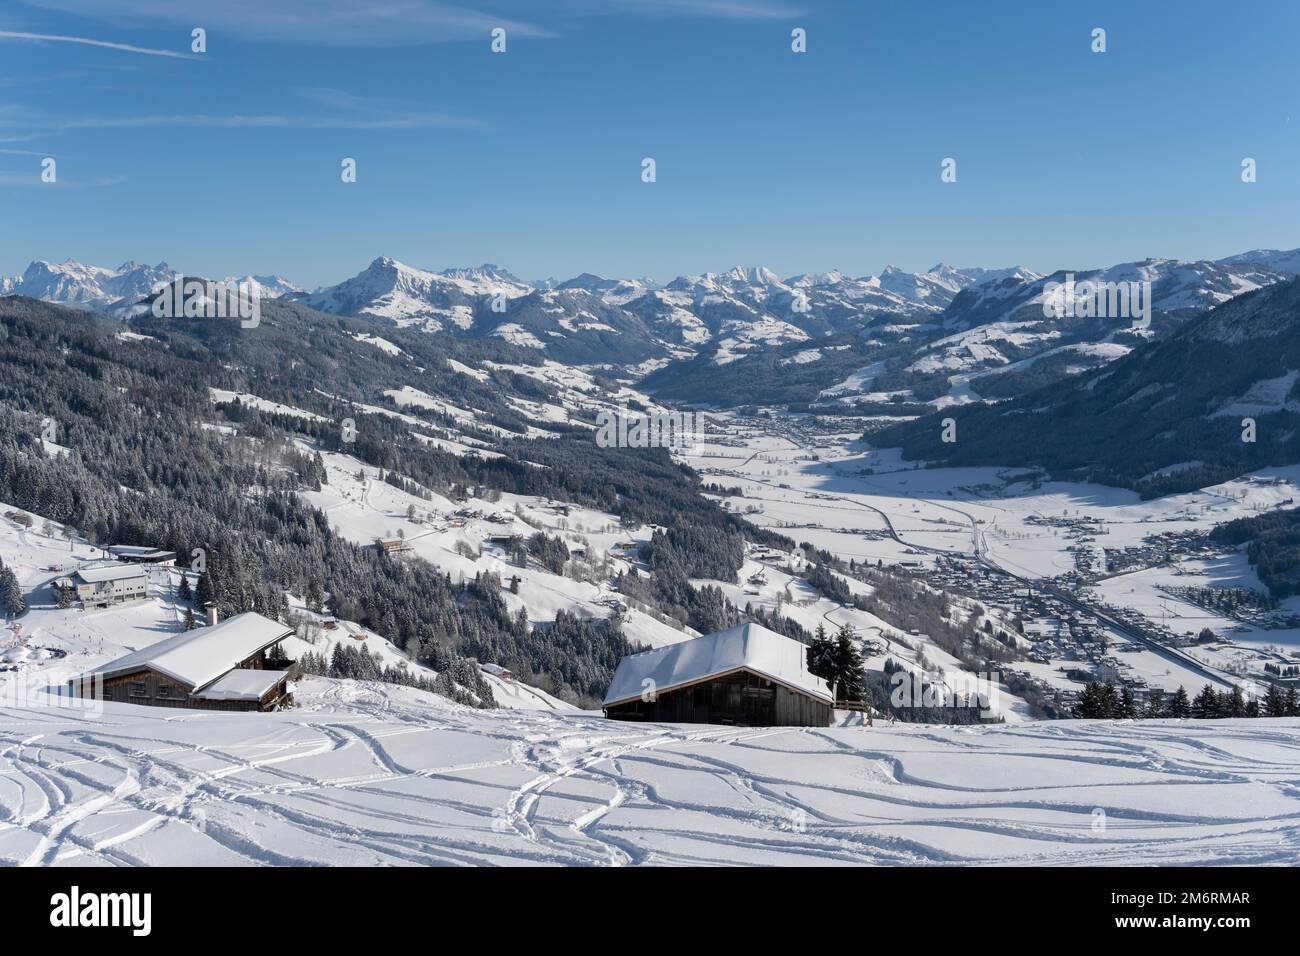 Piste da sci nella neve profonda, vista sulle montagne innevate, comprensorio sciistico Bixen im Thale, Tirolo, Austria Foto Stock